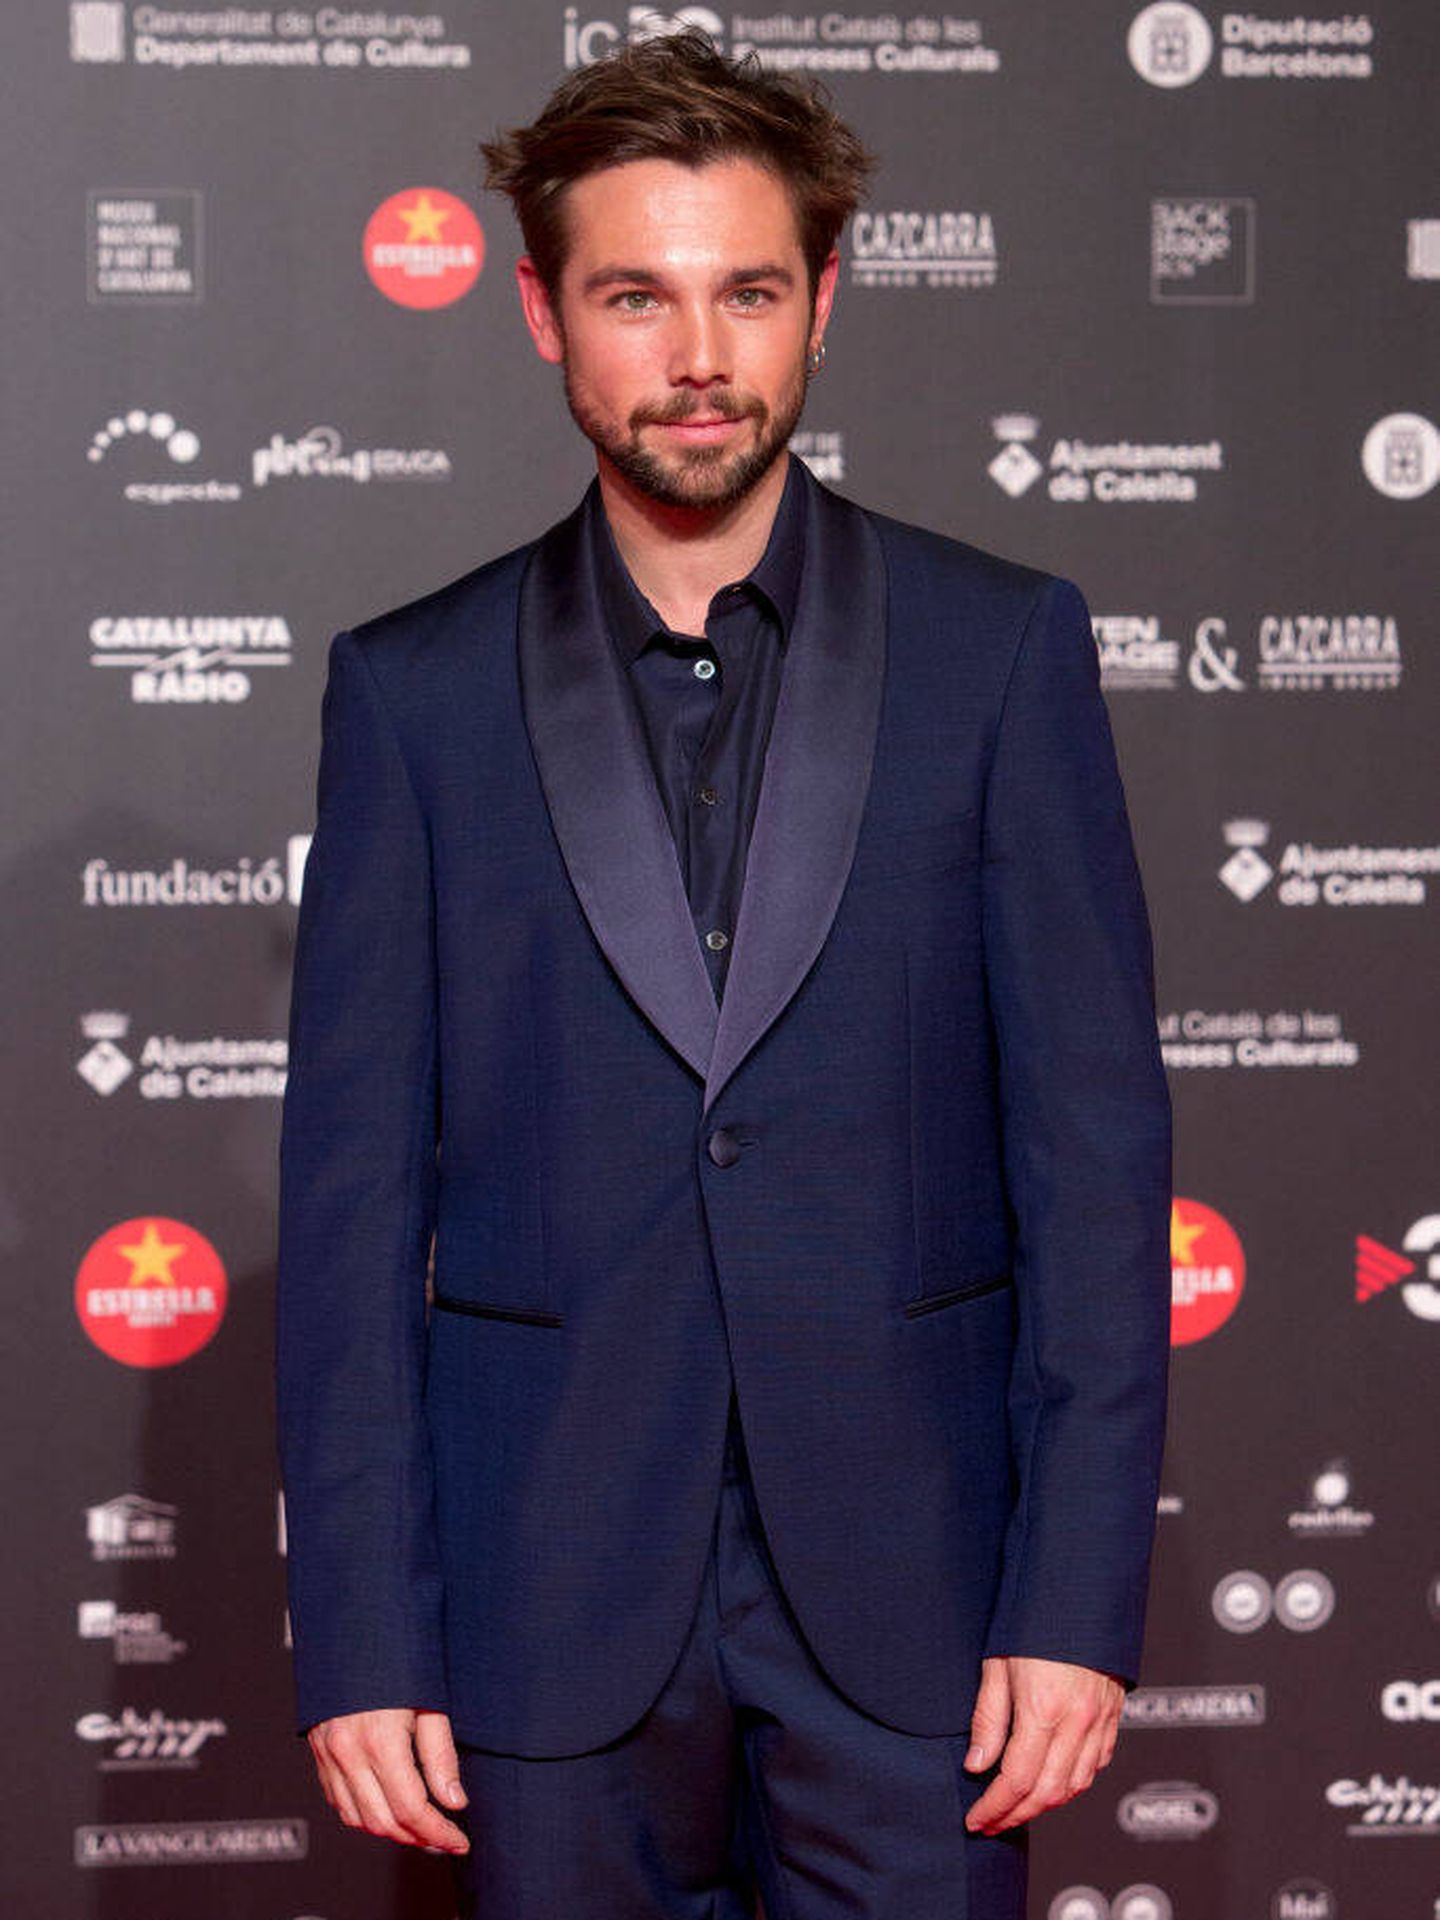 Carlos Cuevas en la alfombra roja de los Premios Gaudí 2022 (Getty Images)